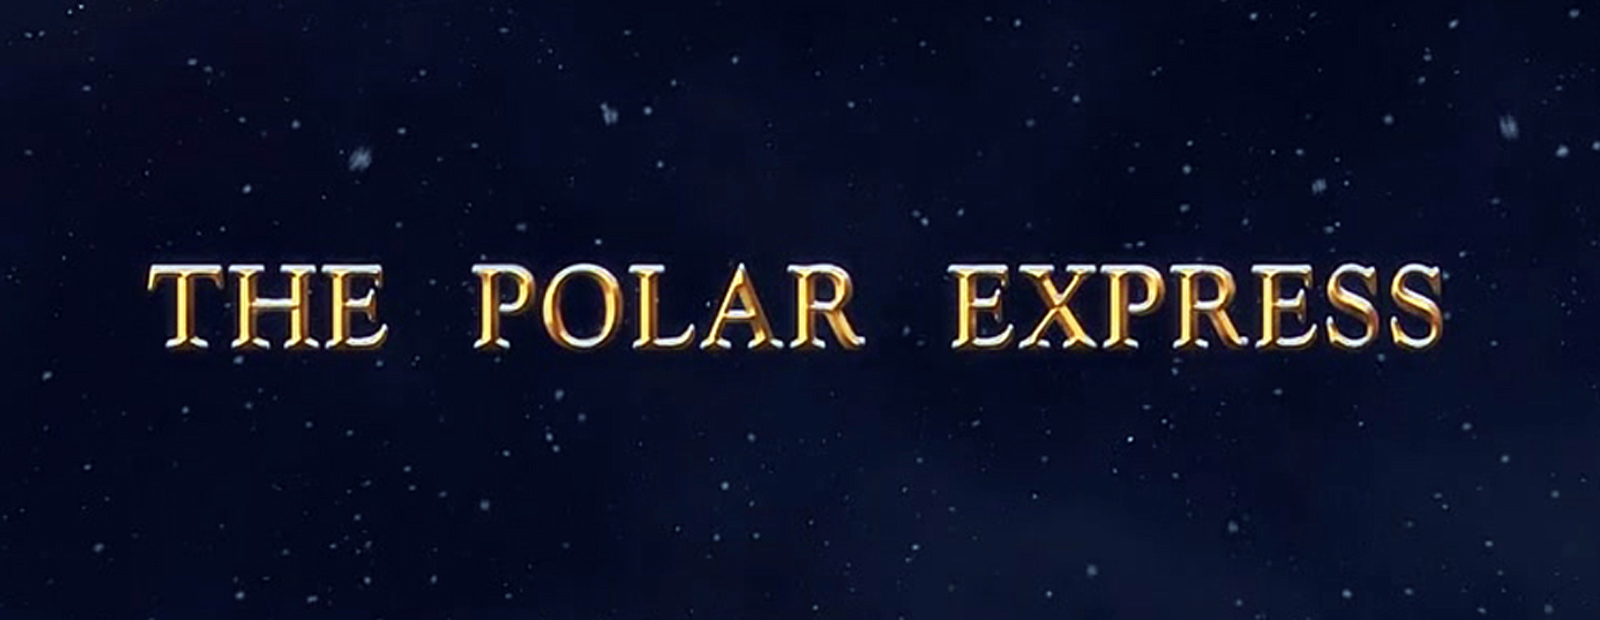 The Polar Express Logos - 